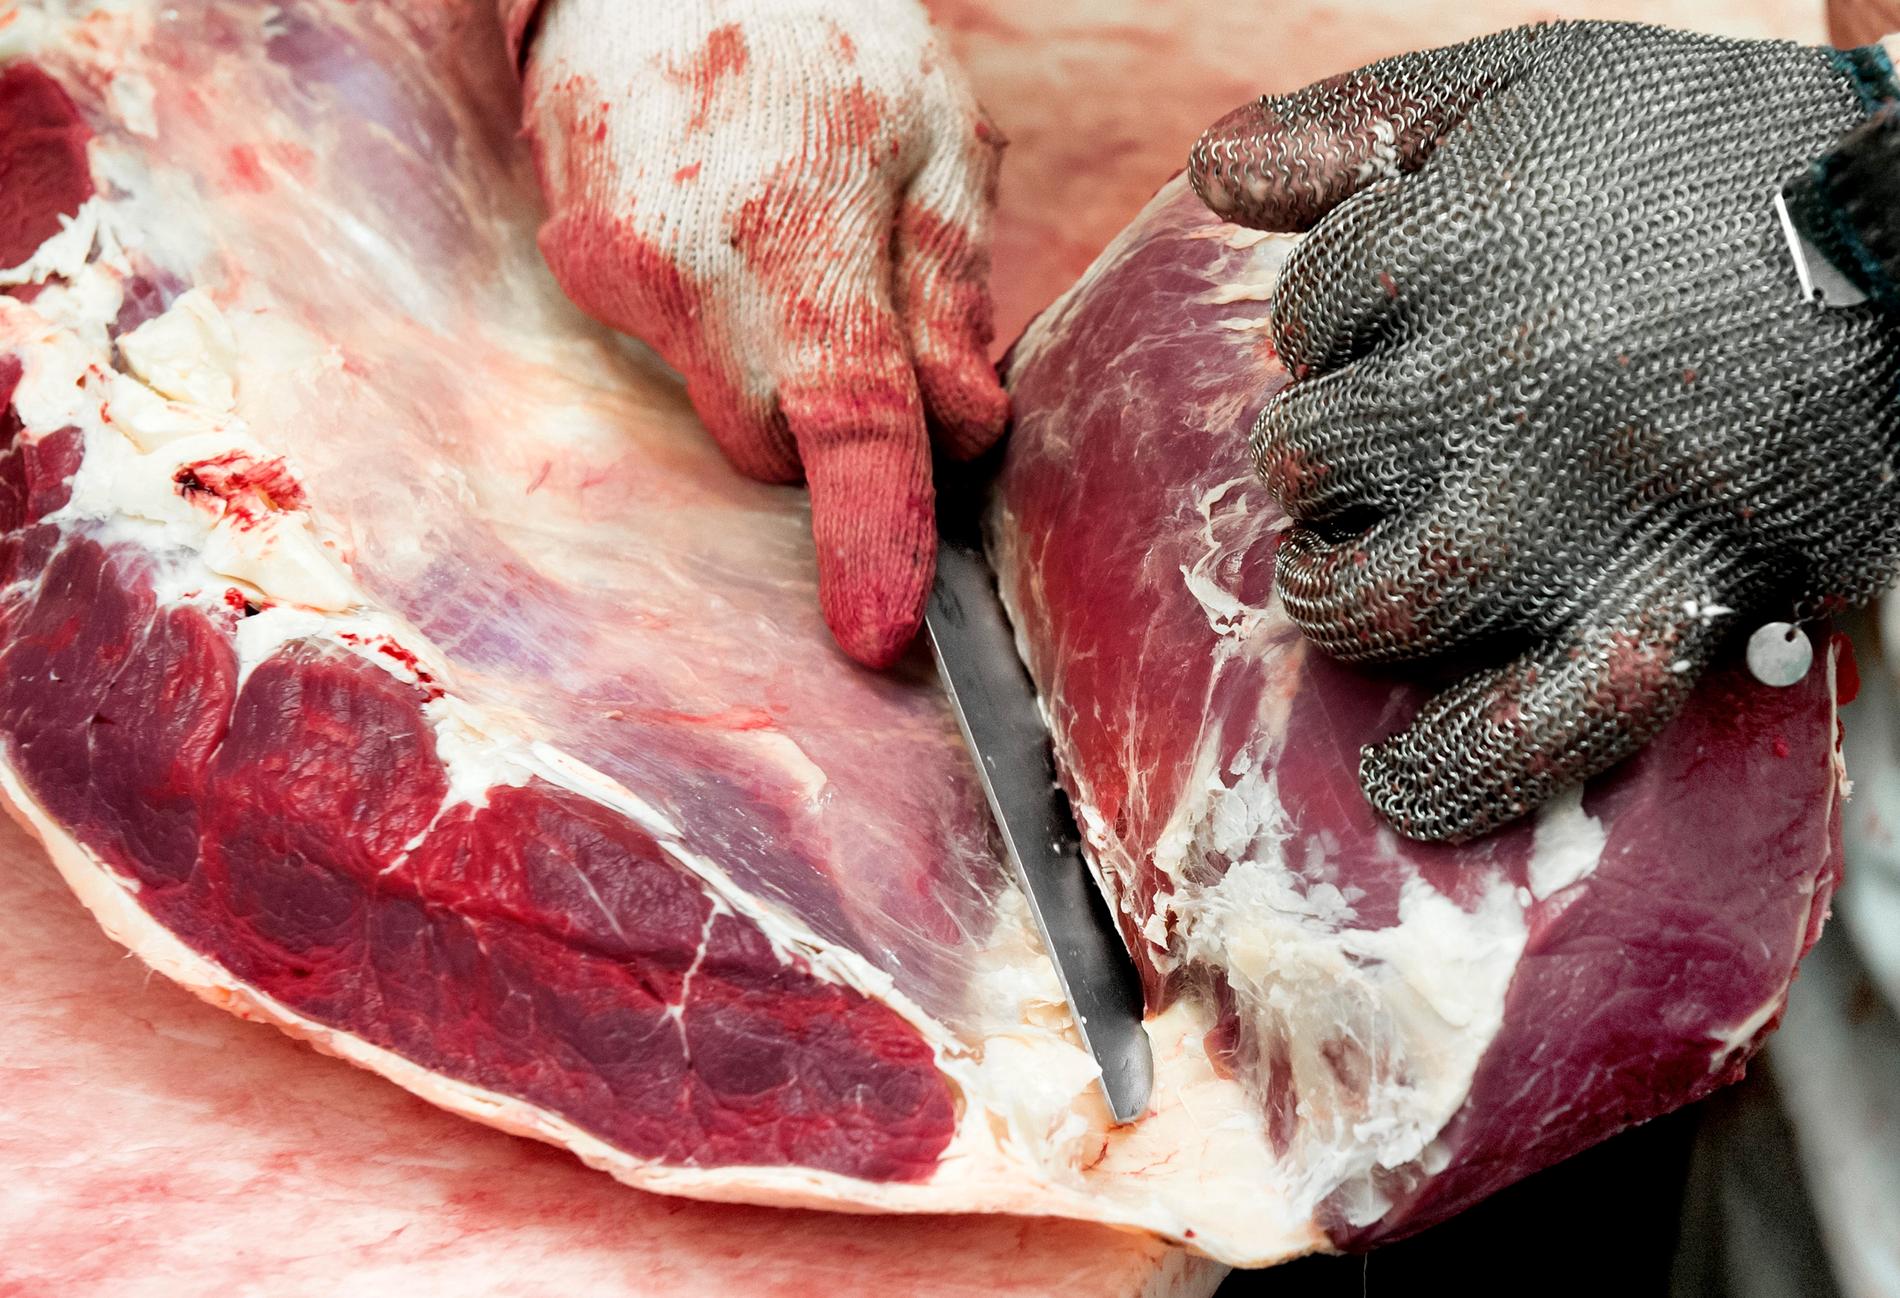 Obesiktigat polskt kött har sålts till Sverige, men det har nu spårats och tagits bort från marknaden. Arkivbild.